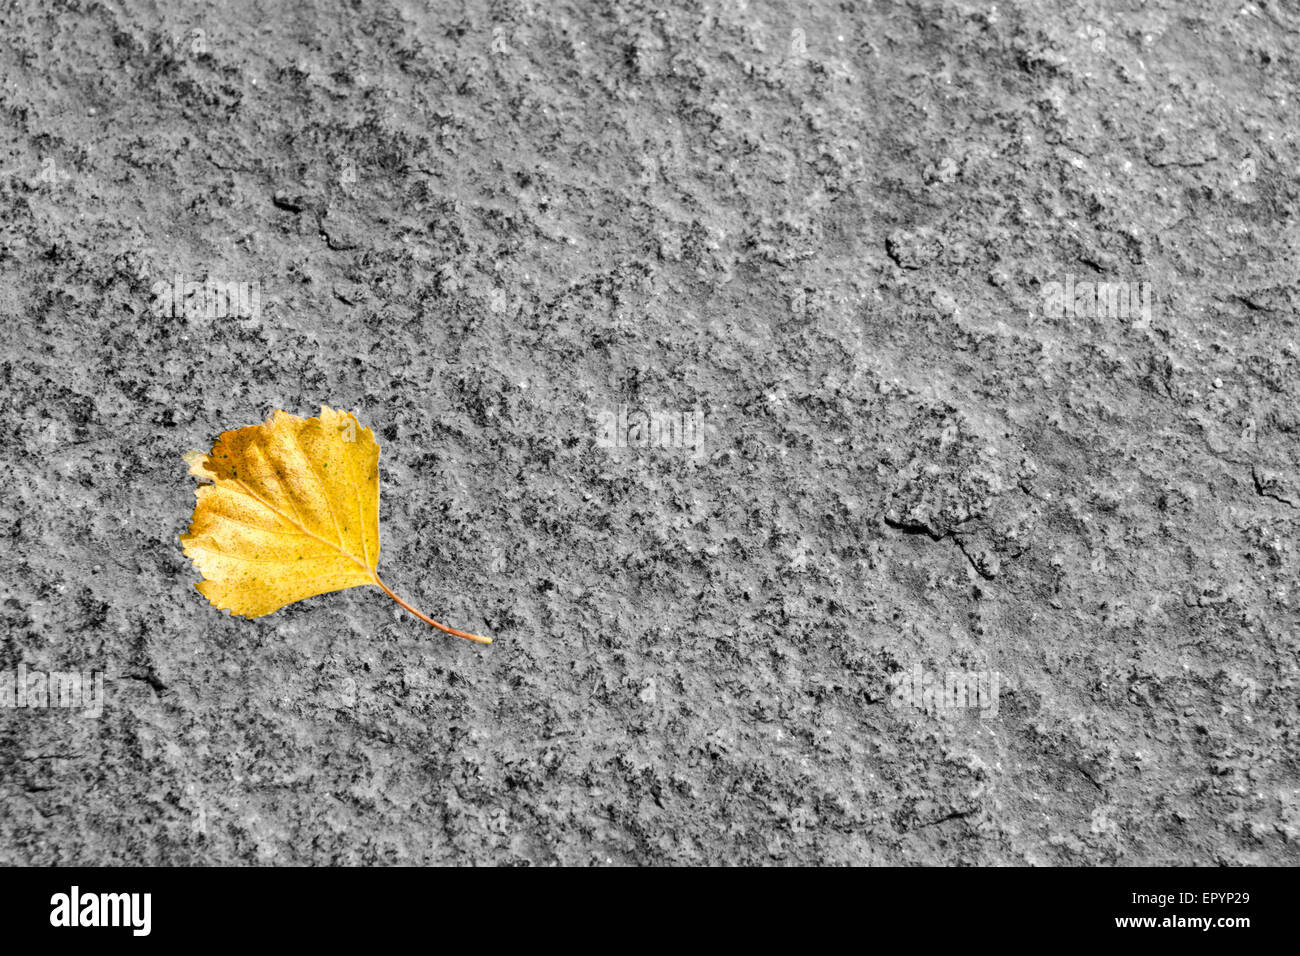 yellow leaf on a stone in autumn  season Stock Photo